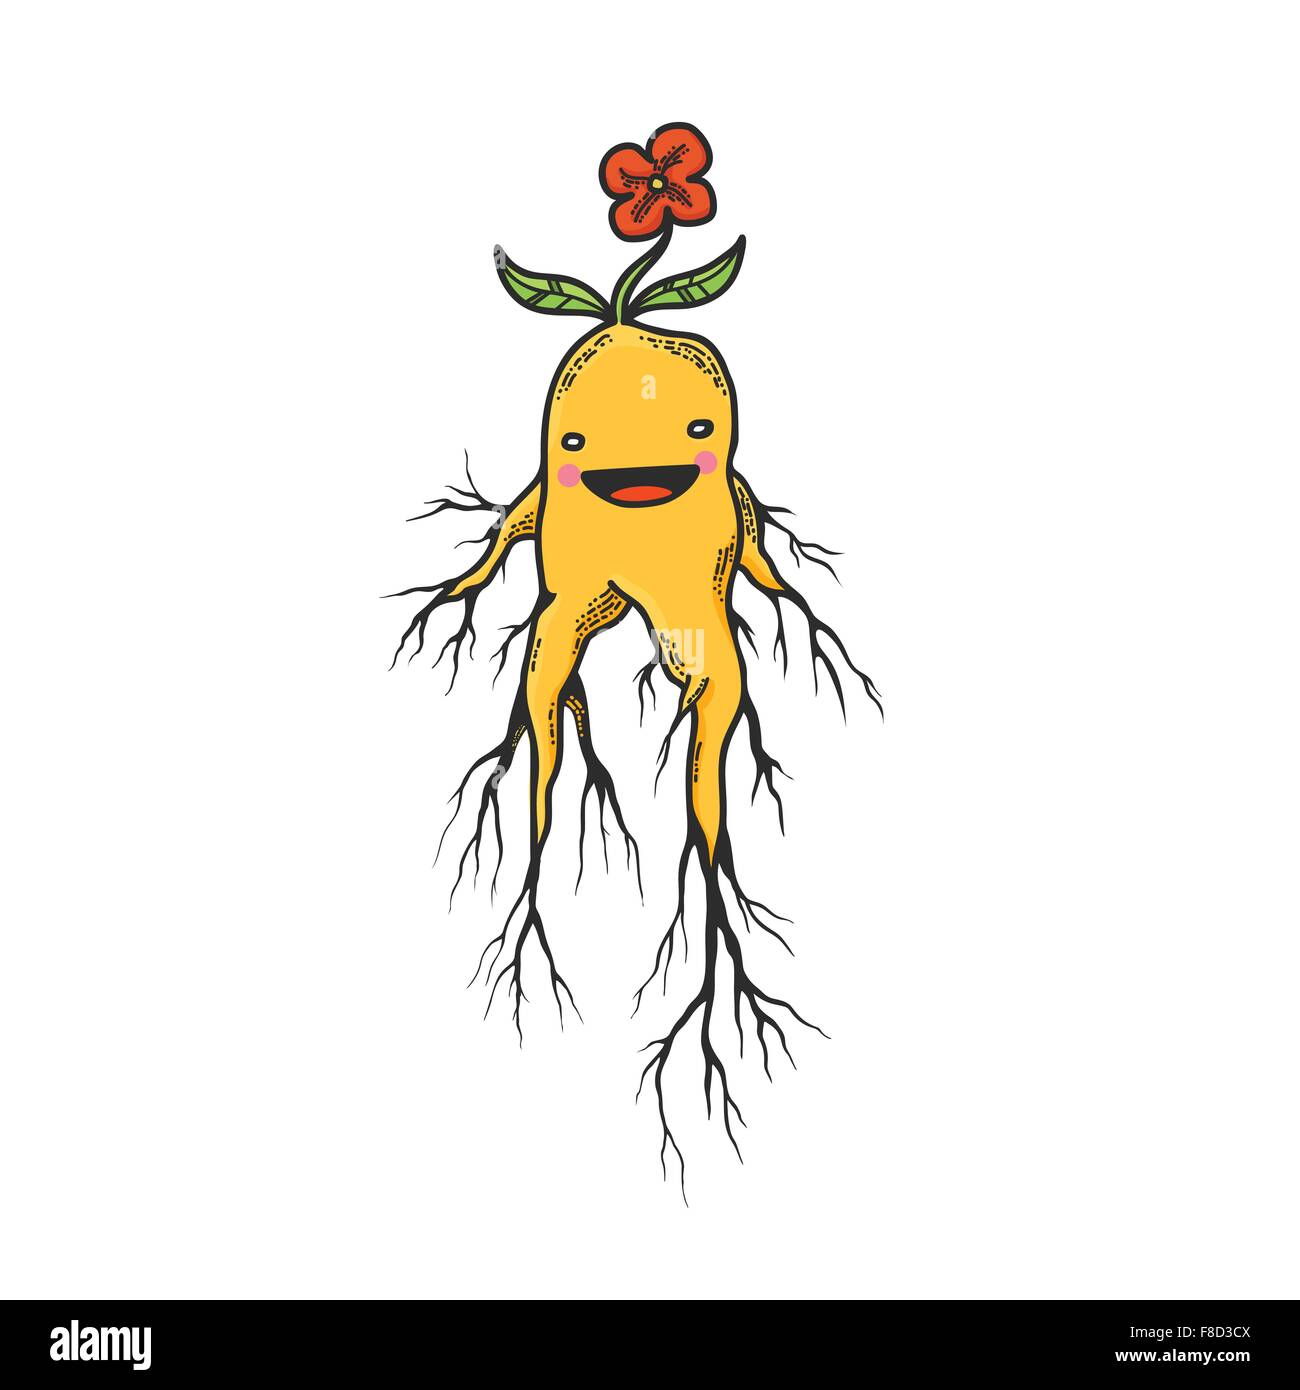 Vektor-Illustration der niedlichen Mandrake Wurzeln Zeichentrickfigur, Isolated on White Background Stock Vektor